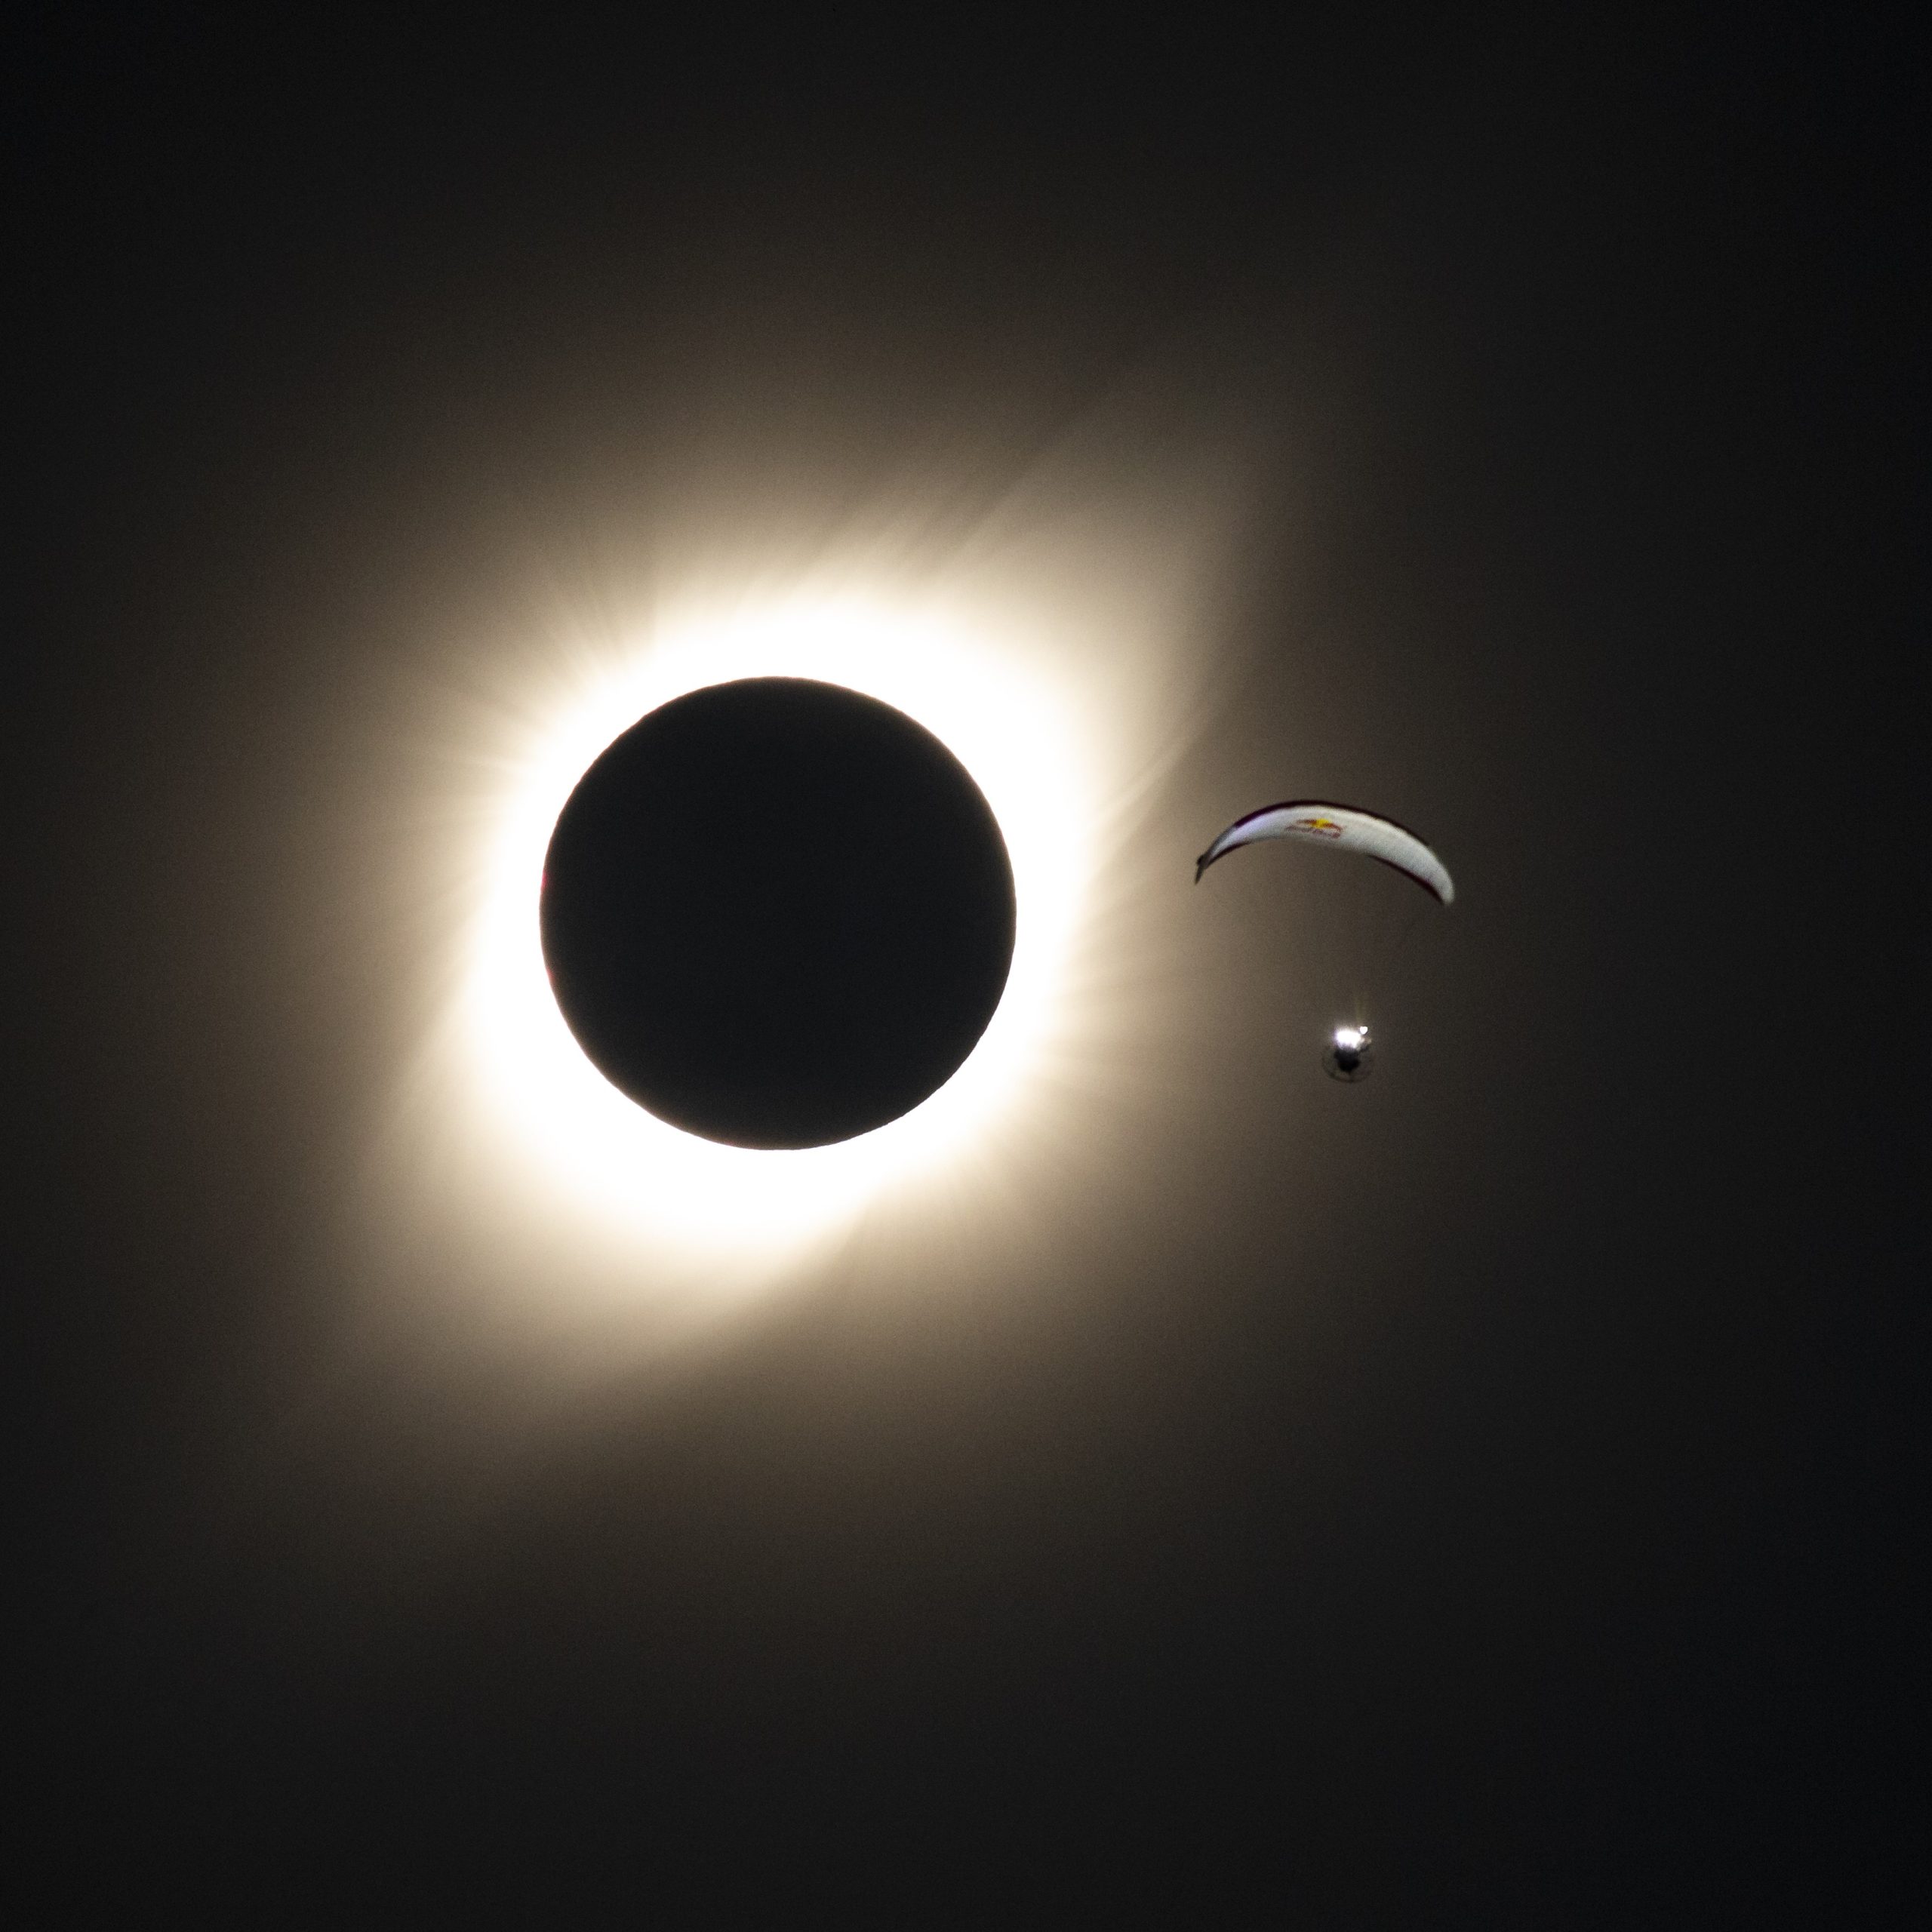  Em 8 de abril de 2024, um eclipse solar total cruzará o continente americano. O Brasil não verá o eclipse total, mas algumas regiões observarão um eclipse parcial. 